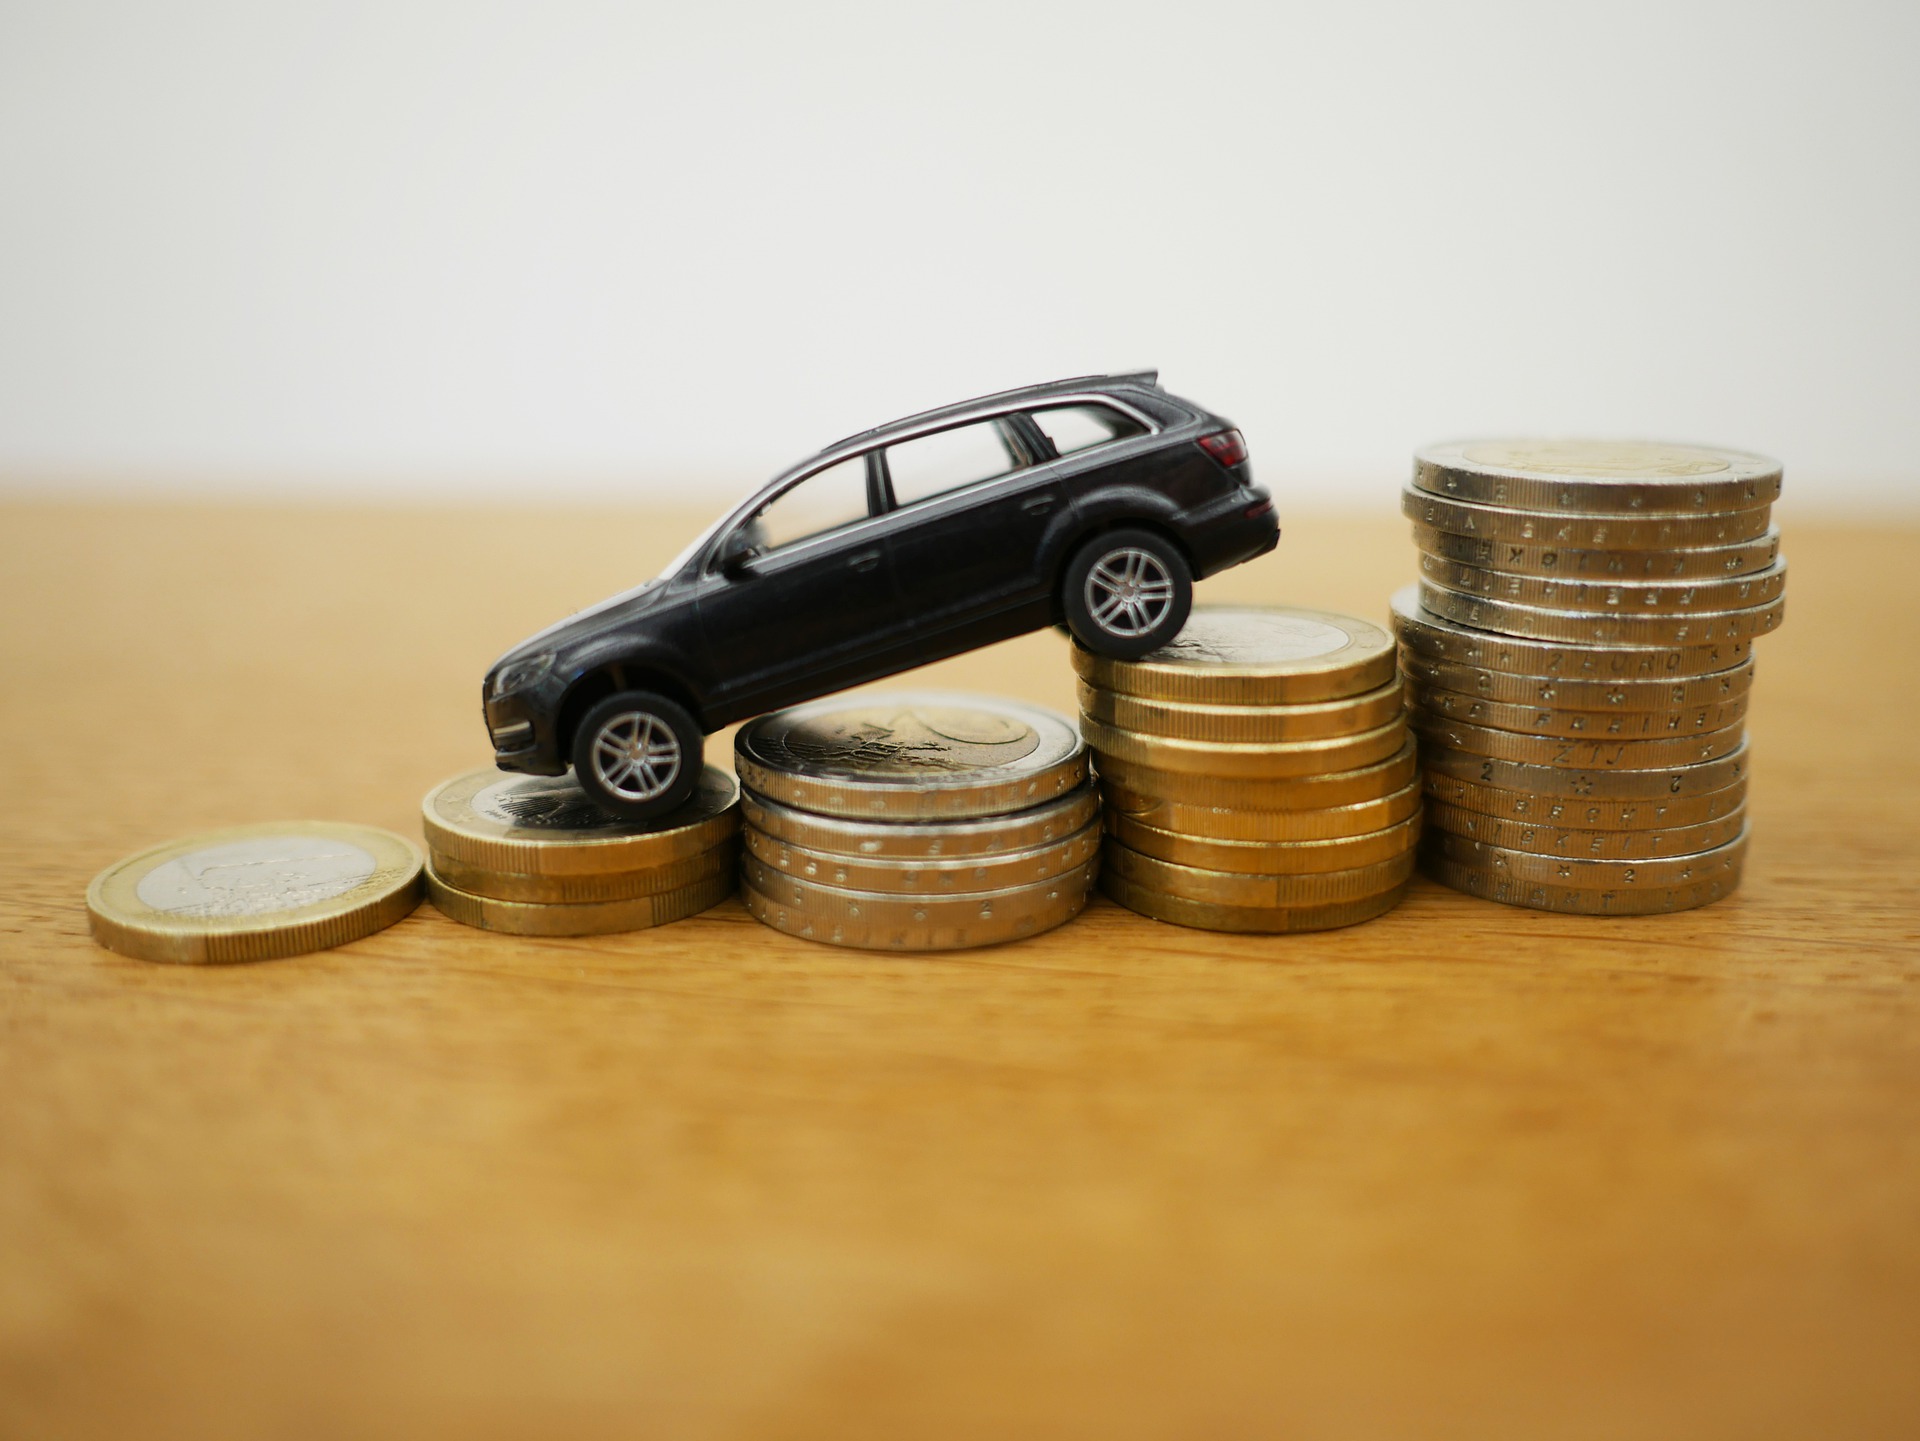 Autíčko na euromince - Nákup auta díky malé DPH?